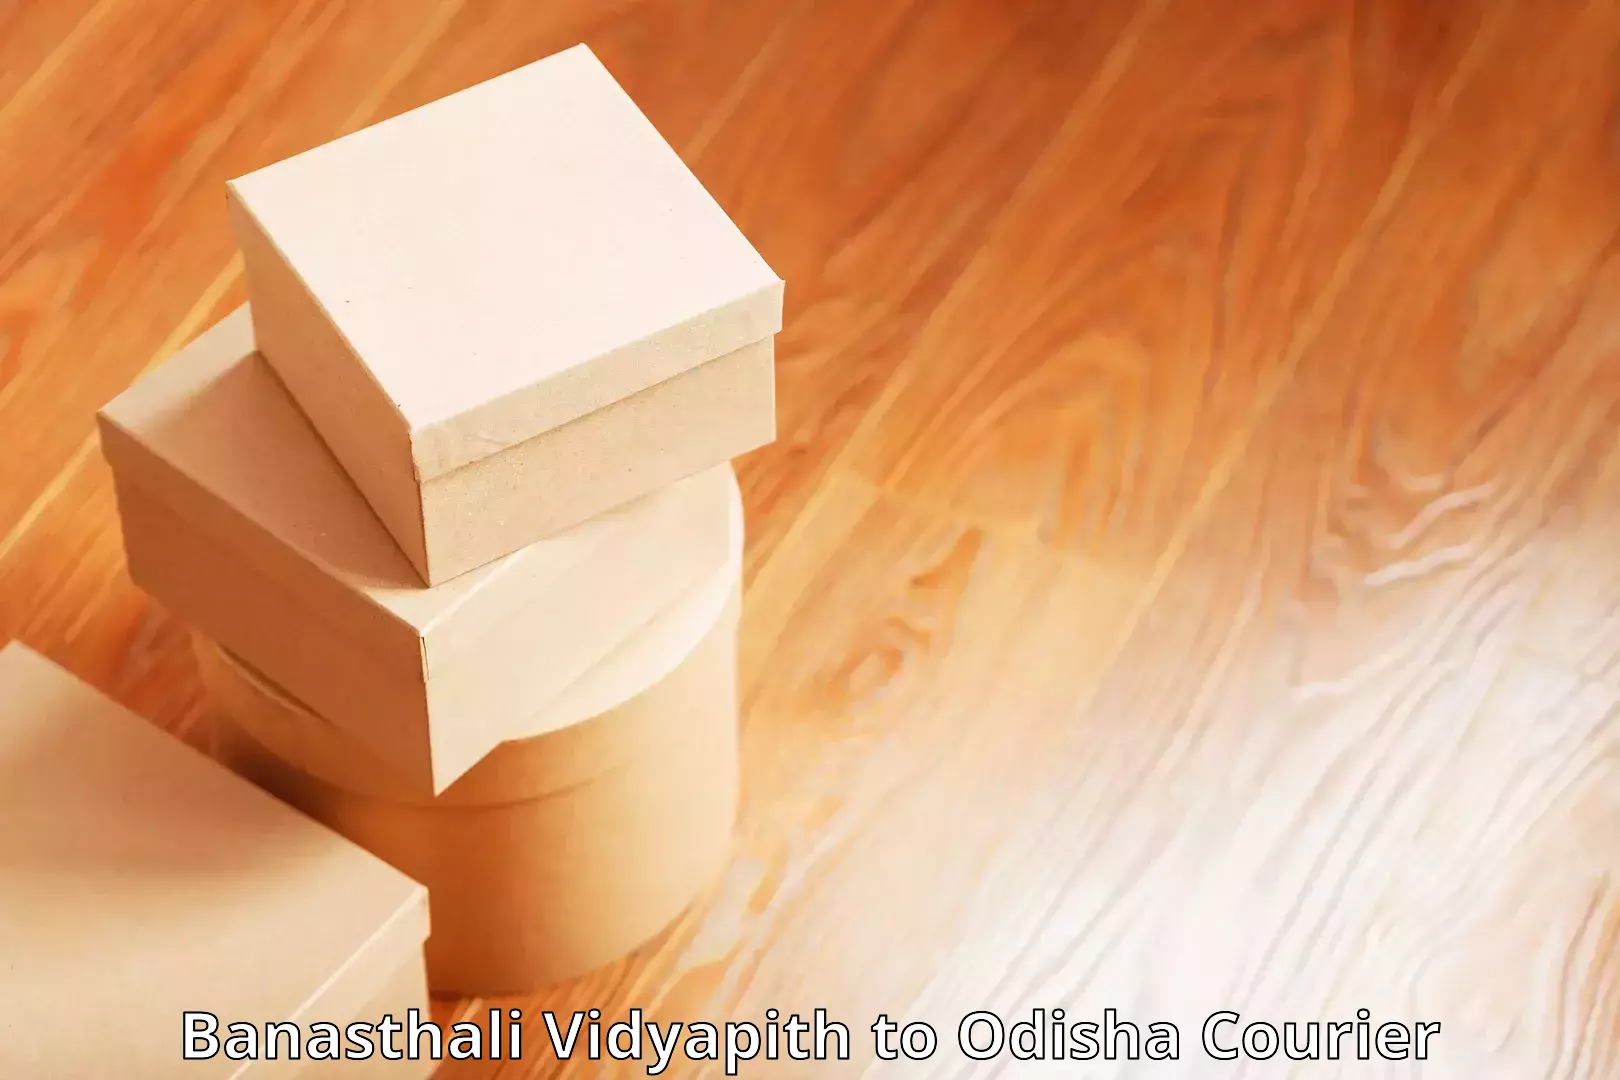 Individual parcel service Banasthali Vidyapith to Kantamal